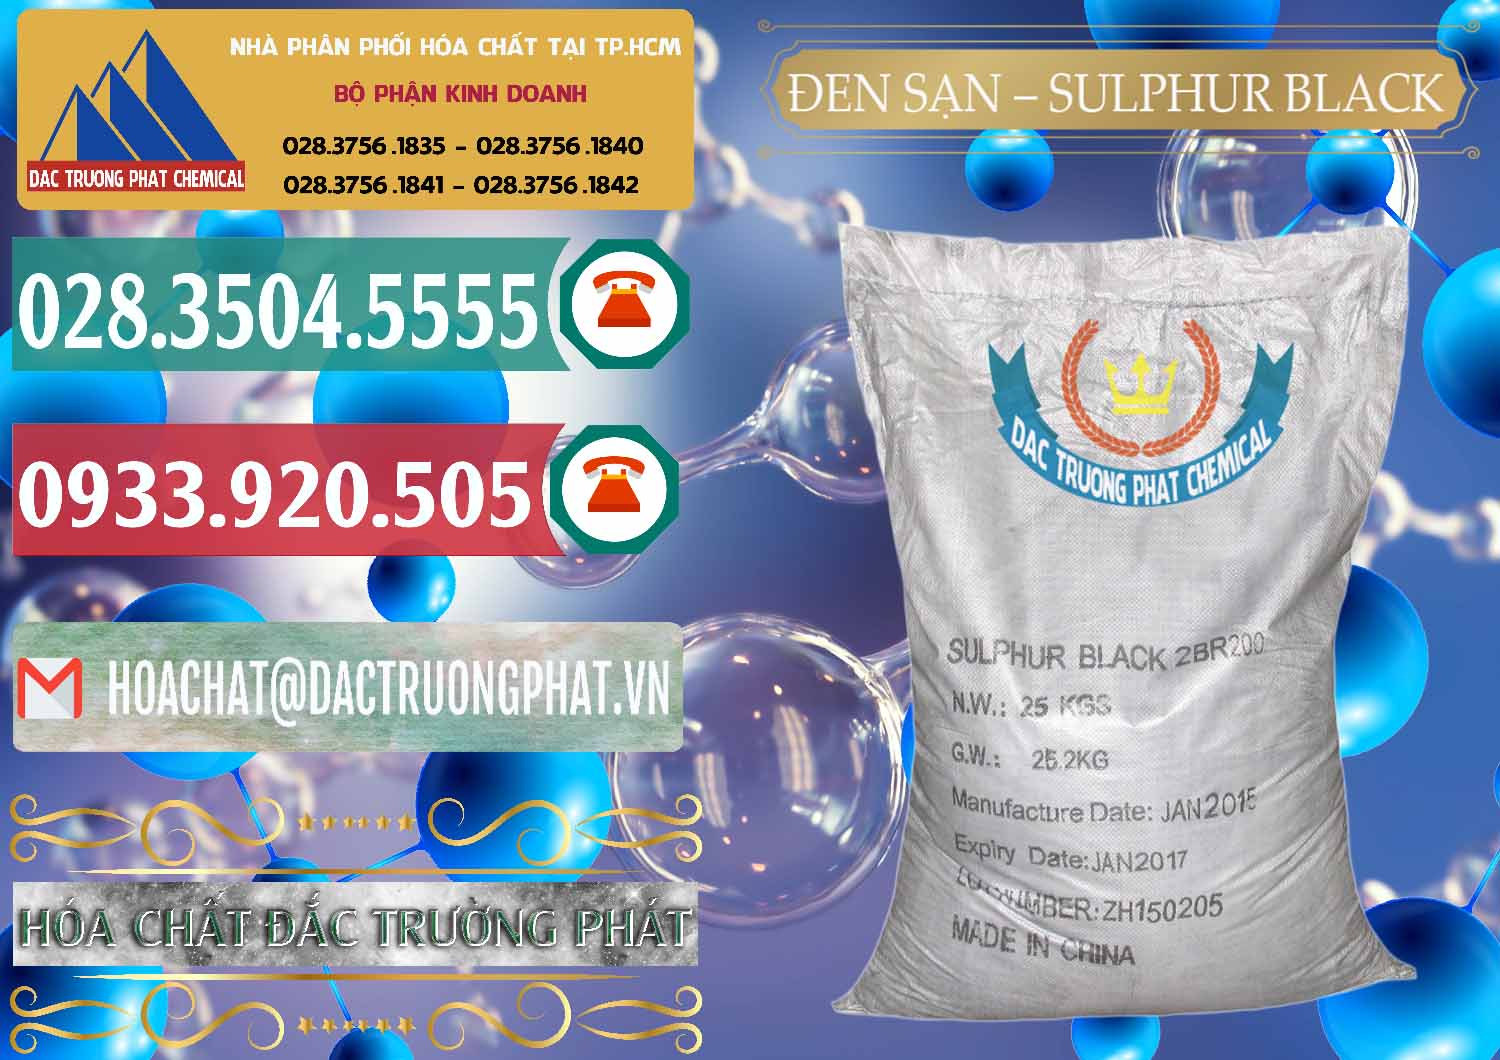 Cty chuyên bán _ cung cấp Đen Sạn – Sulphur Black Trung Quốc China - 0062 - Nơi cung cấp _ phân phối hóa chất tại TP.HCM - muabanhoachat.vn